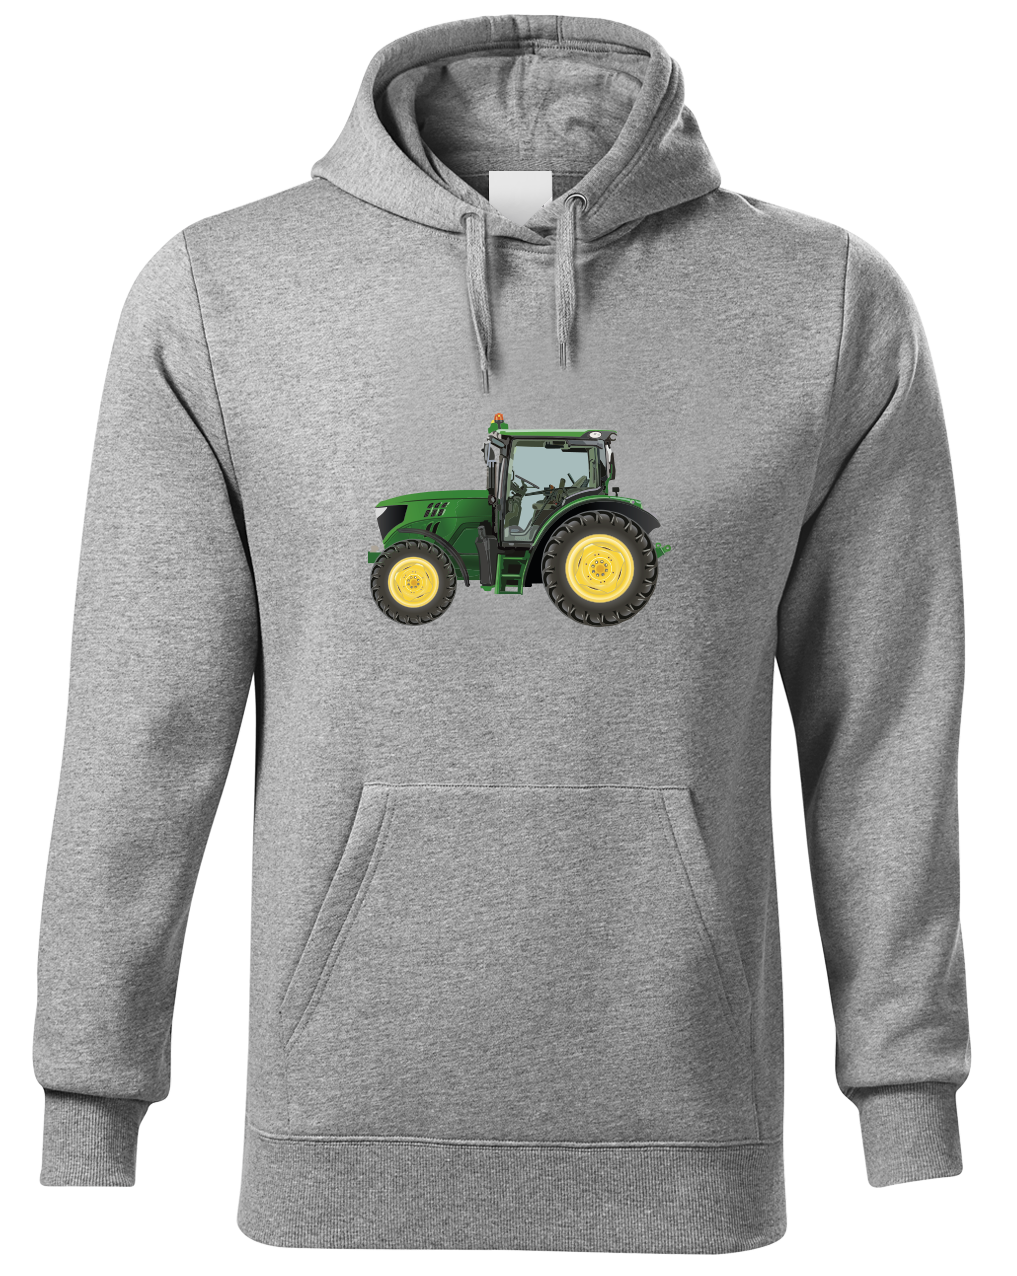 Mikina s traktorem - Zelený traktor Velikost: XL, Barva: Světle šedá